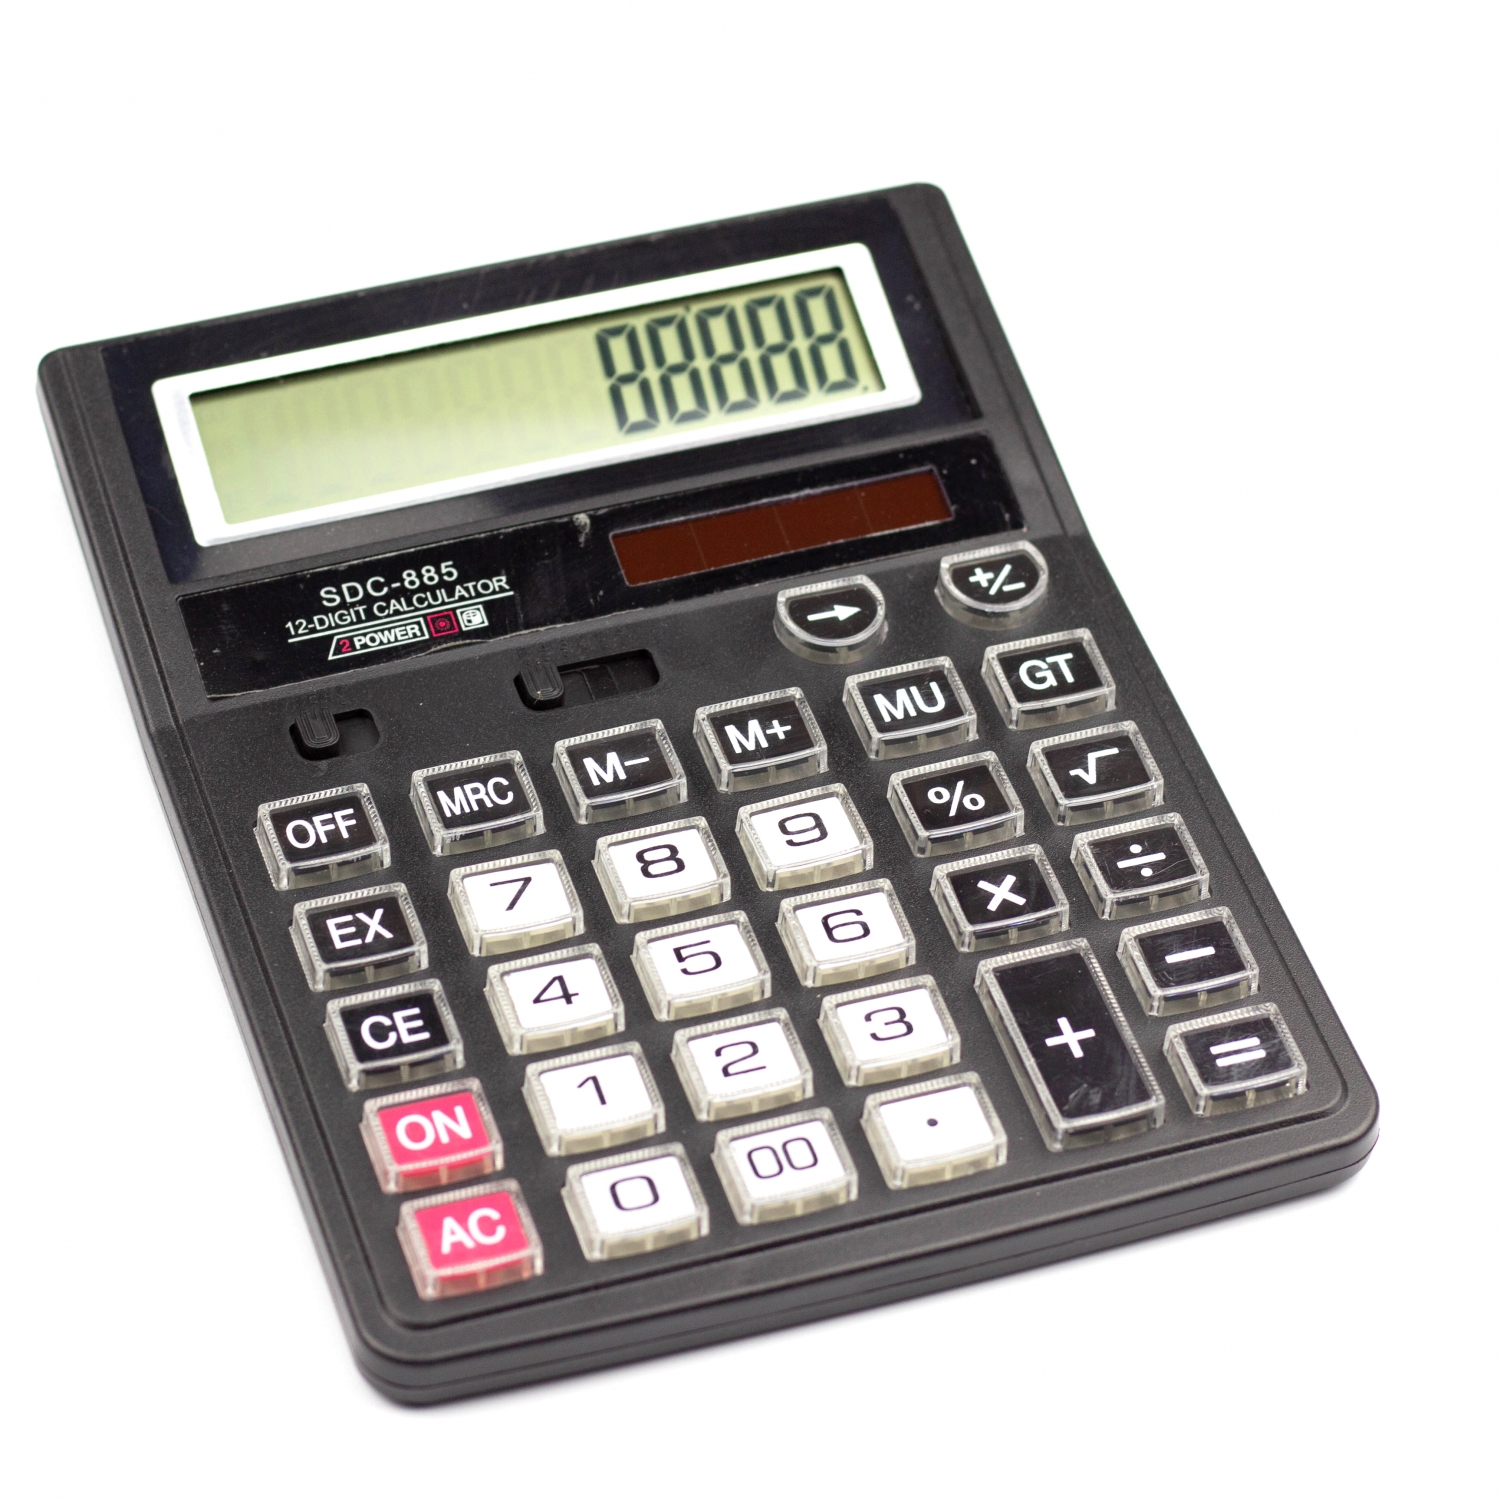 Калькулятор SDC-885 в коробке 12 разрядный AL6350 - Челябинск 